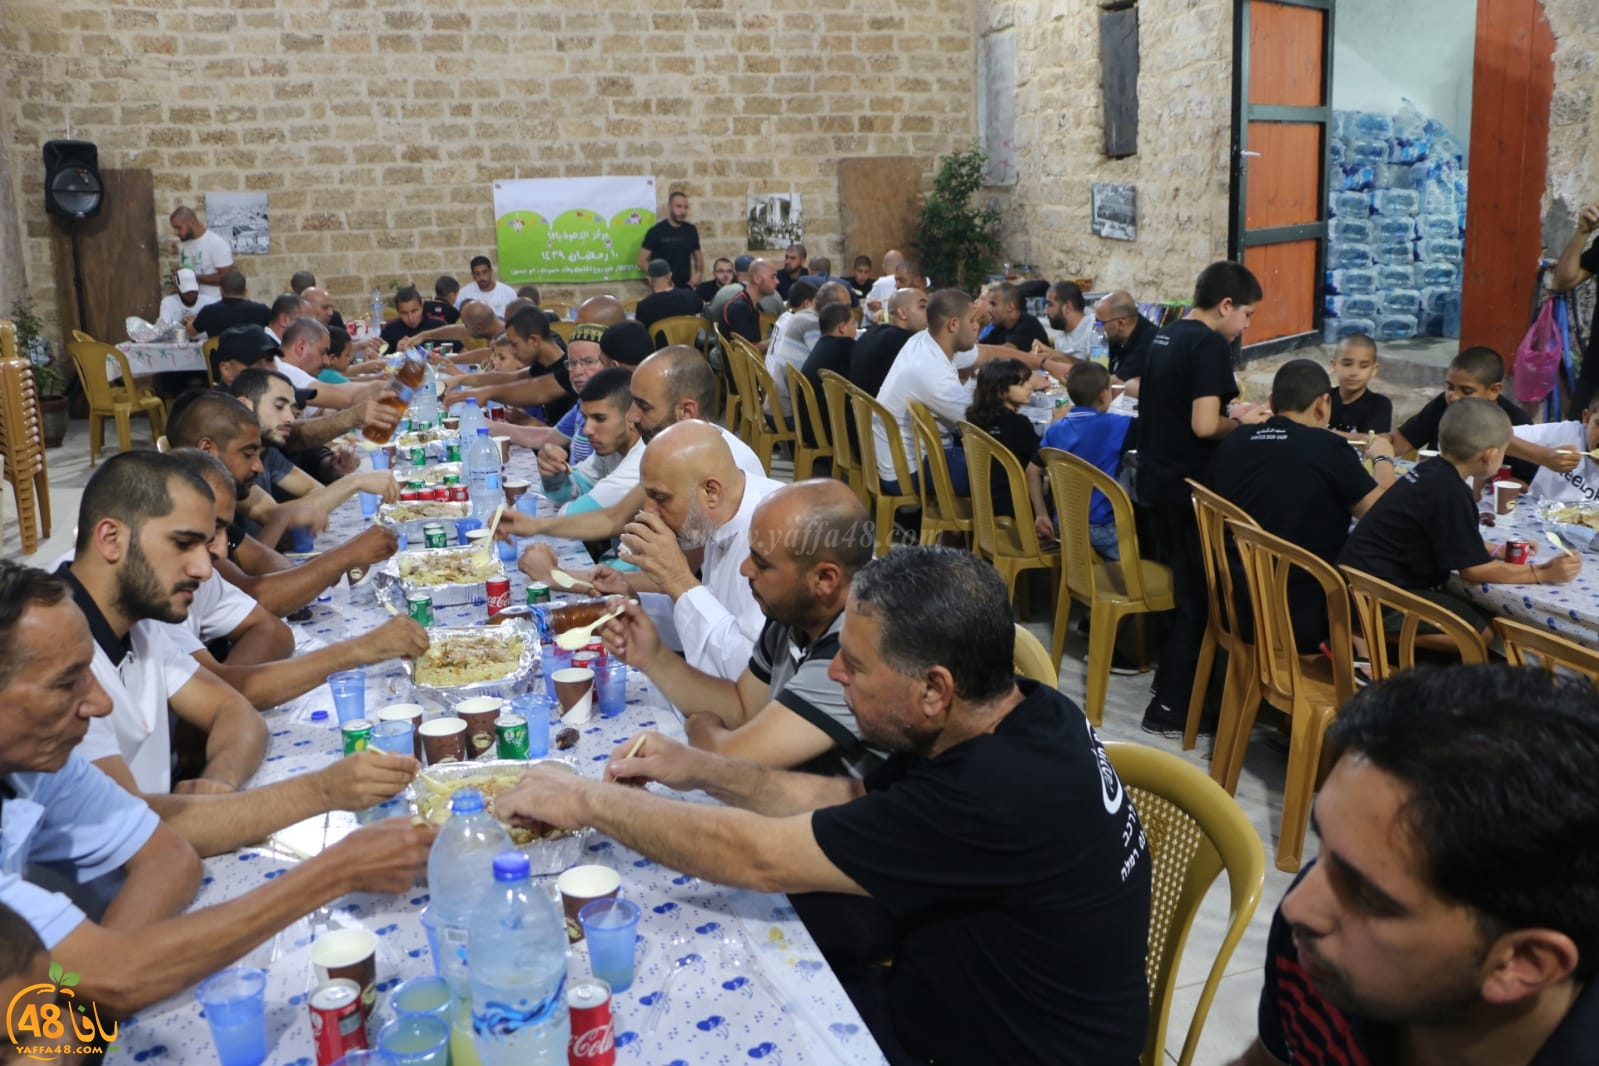  بالصور: افطار جماعي في مركز الدعوة بمدينة يافا